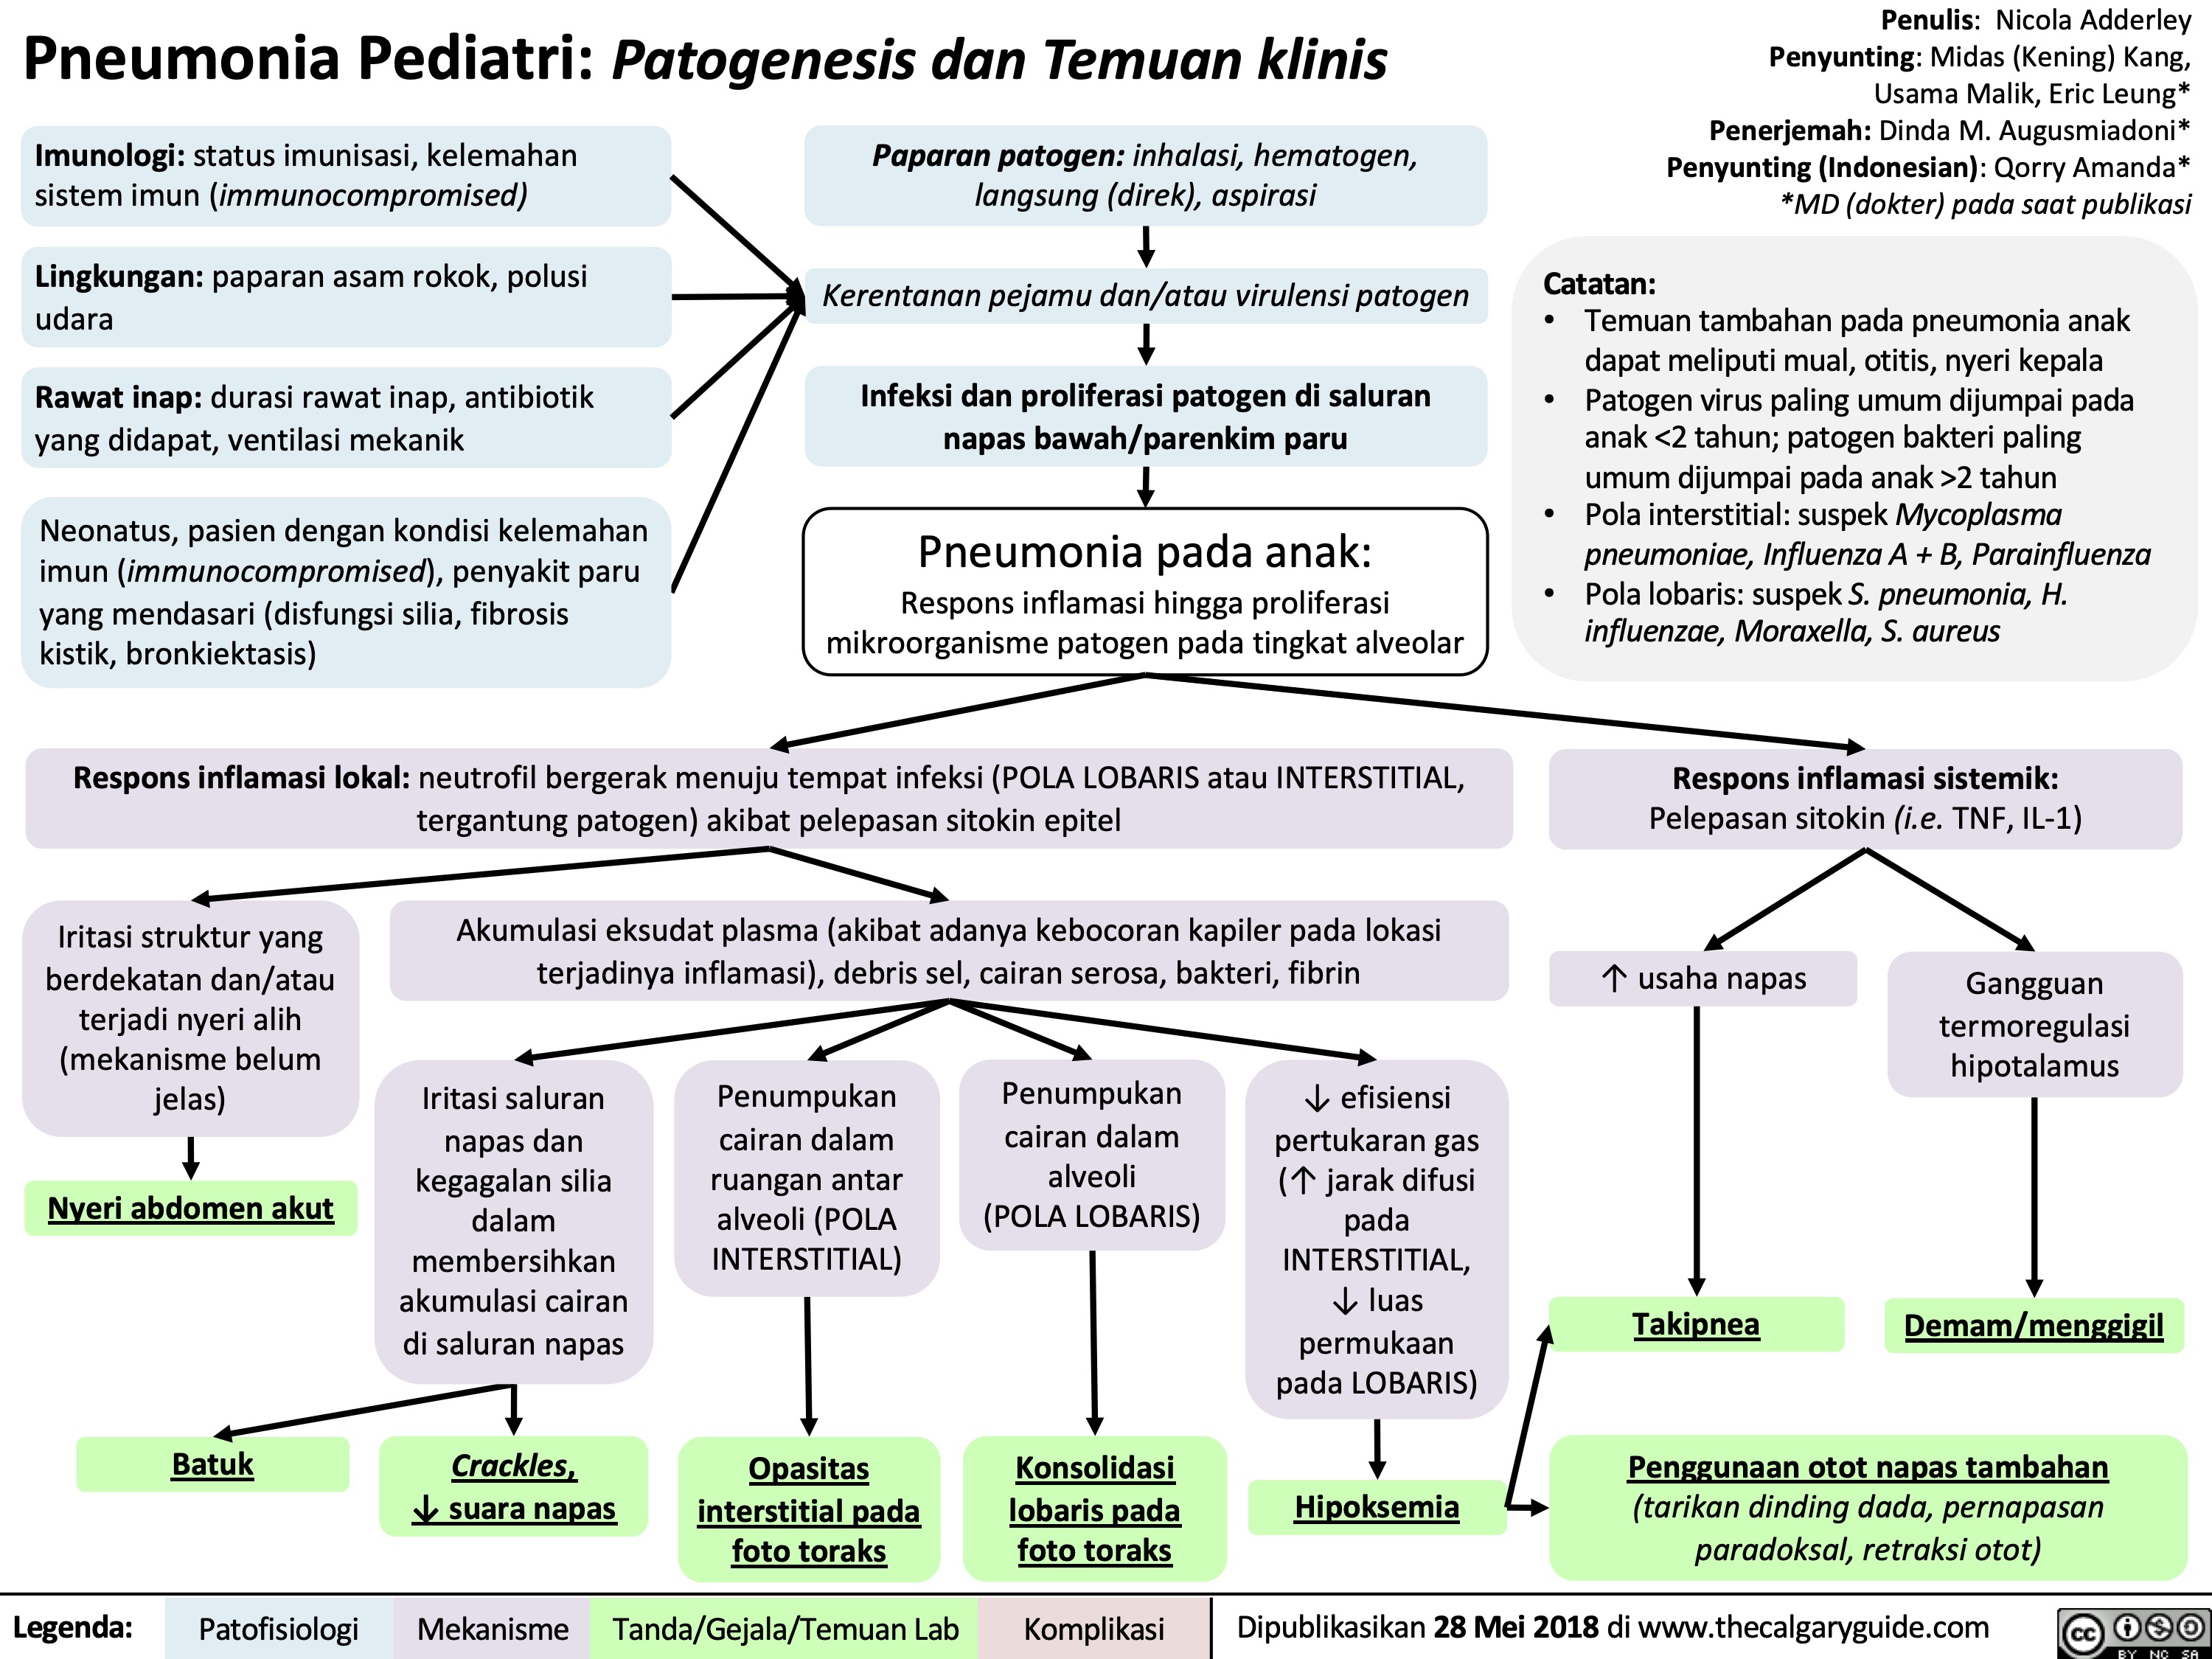 Pneumonia Pediatri: Patogenesis dan Temuan klinis